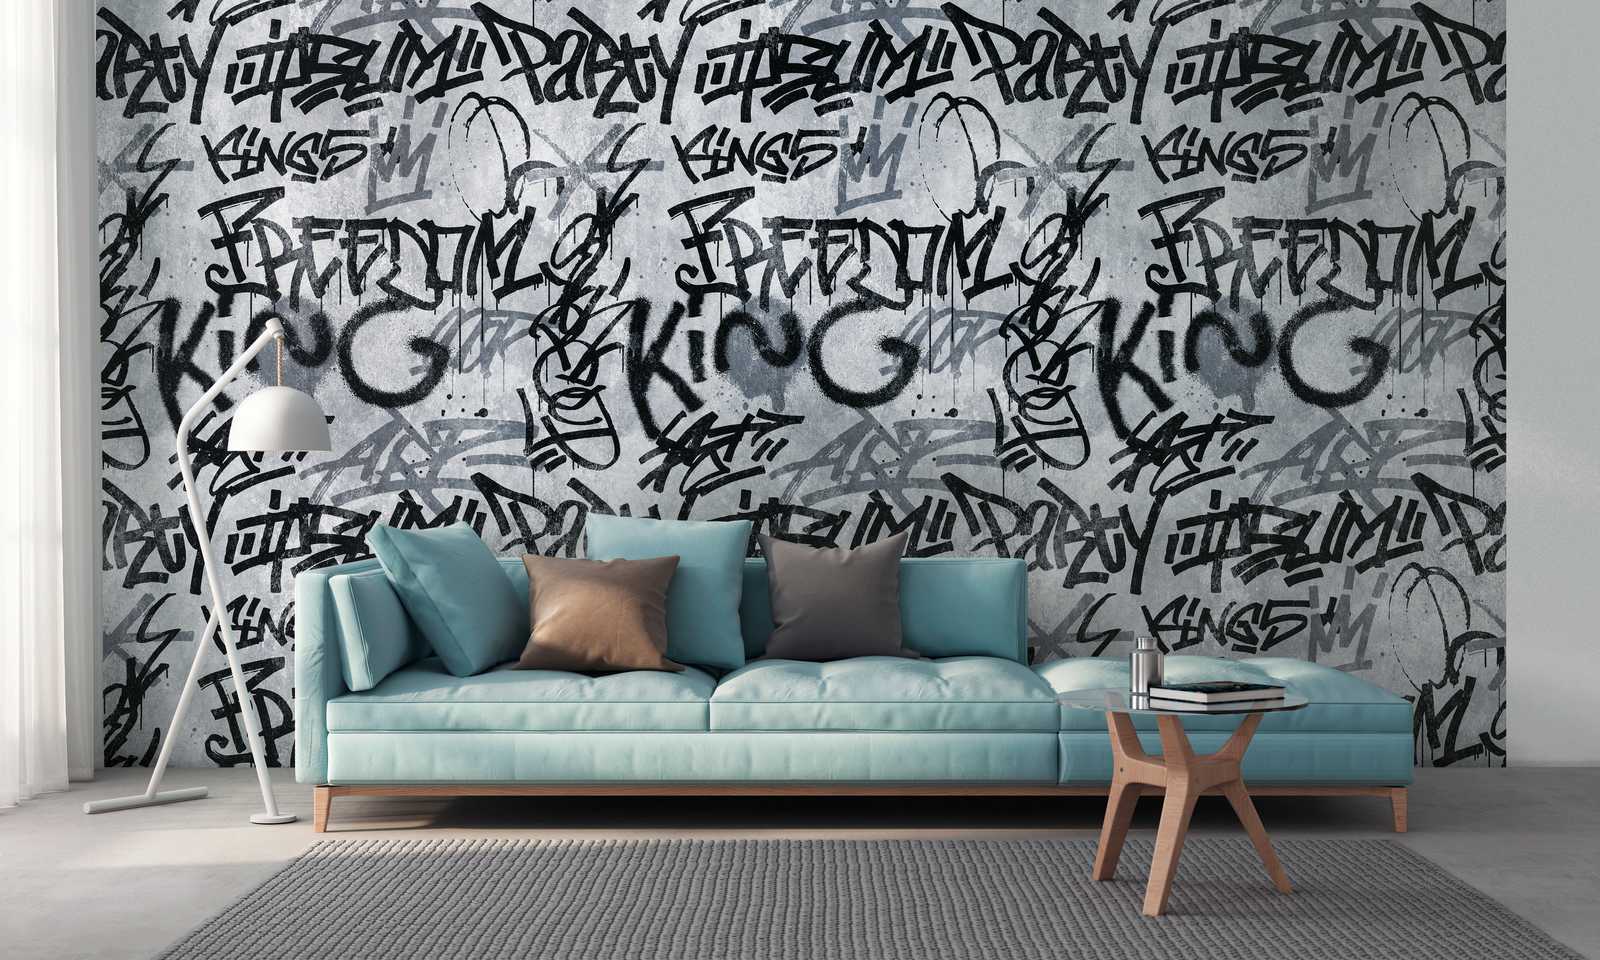             Papel pintado novedad | papel pintado motivo graffiti y diseño concreto, gris y urbano
        